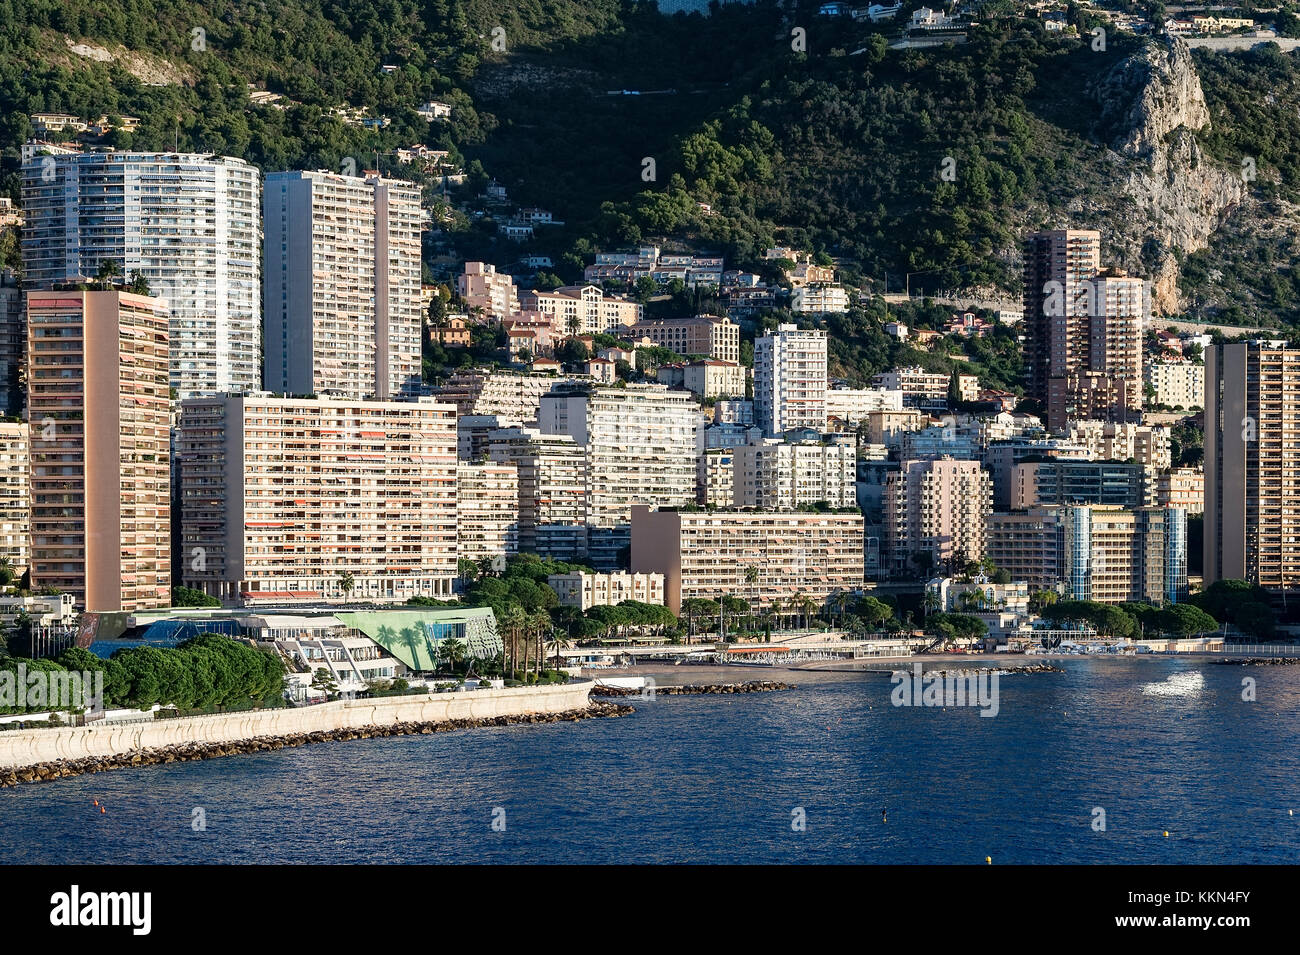 Monaco coastline and architecture. Stock Photo